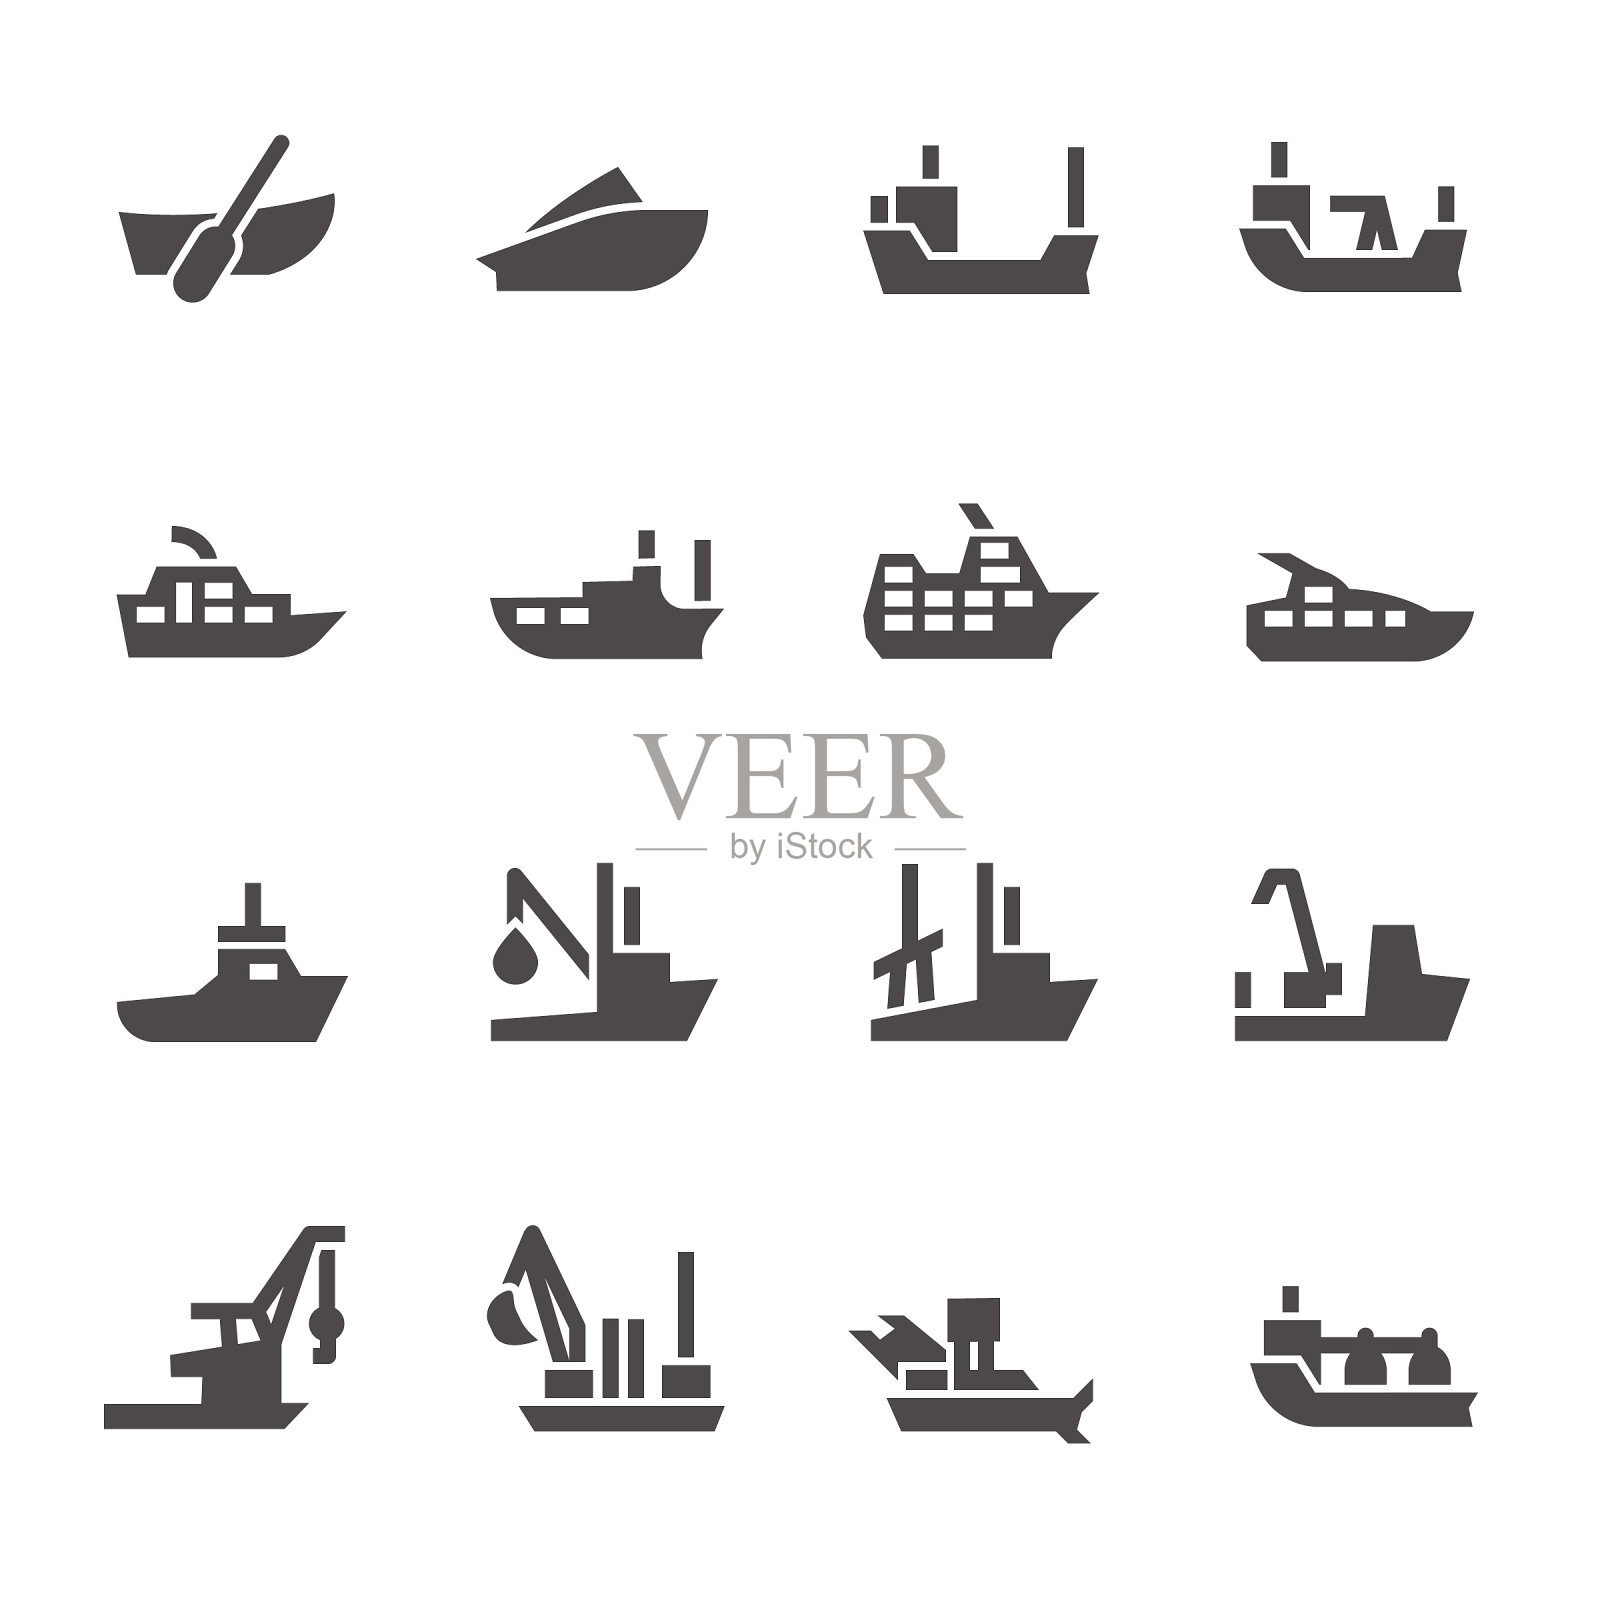 客运和工业船舶的图标字形风格插画图片素材